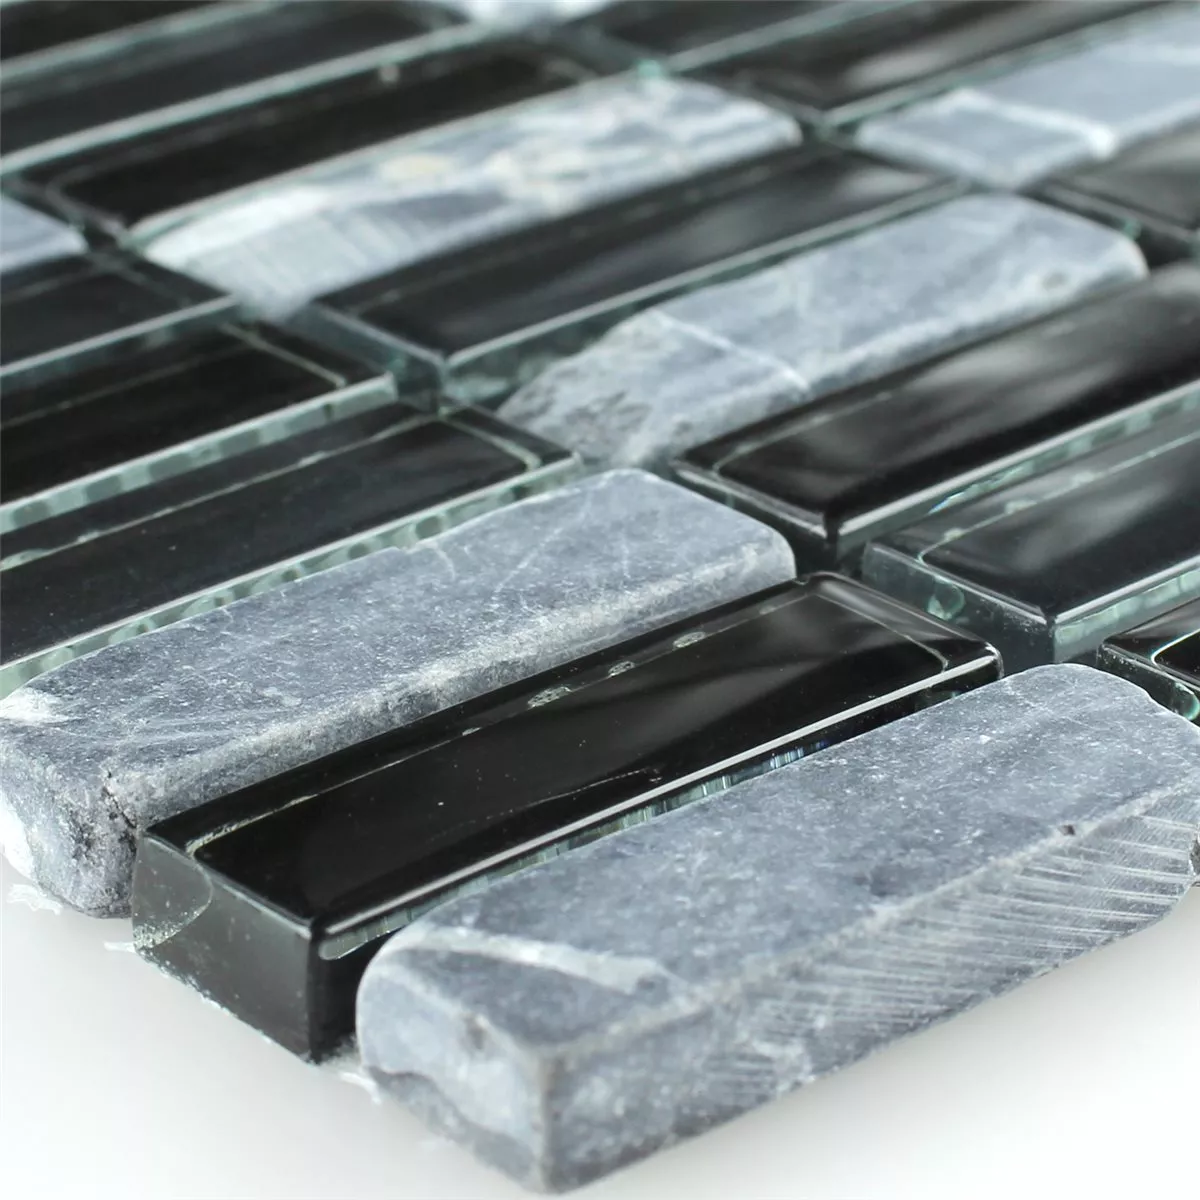 Muster von Mosaikfliesen Glas Marmor Schwarz Grau Mix